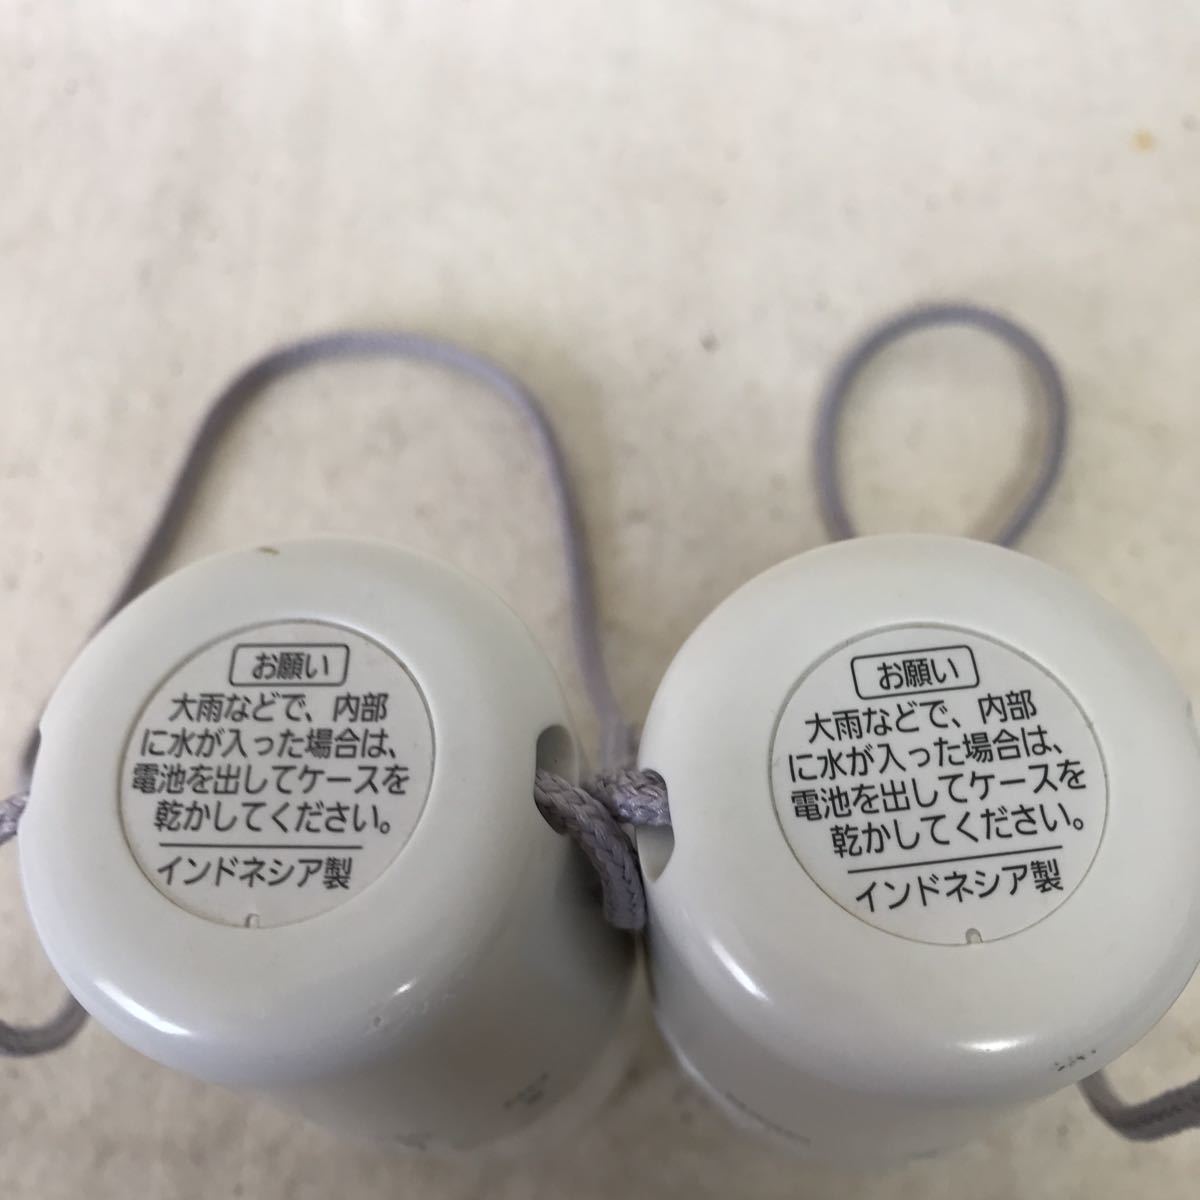 Z-293 panasonic Panasonic LED фонарь 2 шт. комплект модель (BF-AL01) бедствие меры грузоподъемность . даже сделав можно использовать лампочка-индикатор подтверждено батарейка нет 